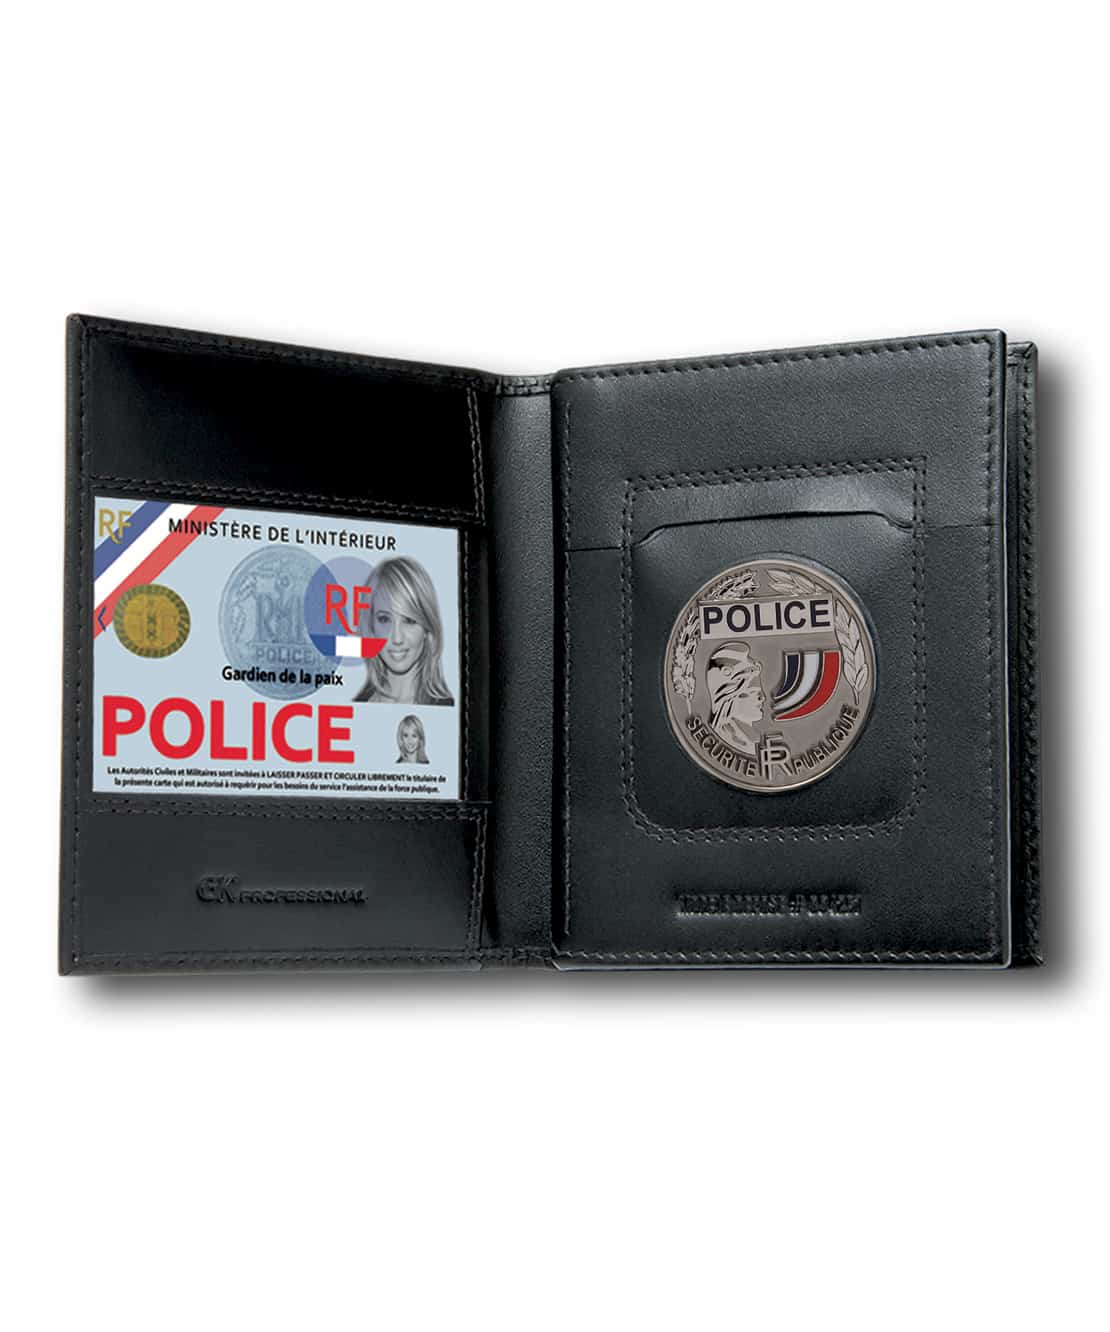 Porte-carte Gendarmerie 3 volets avec médaille et grade,cuir véritable